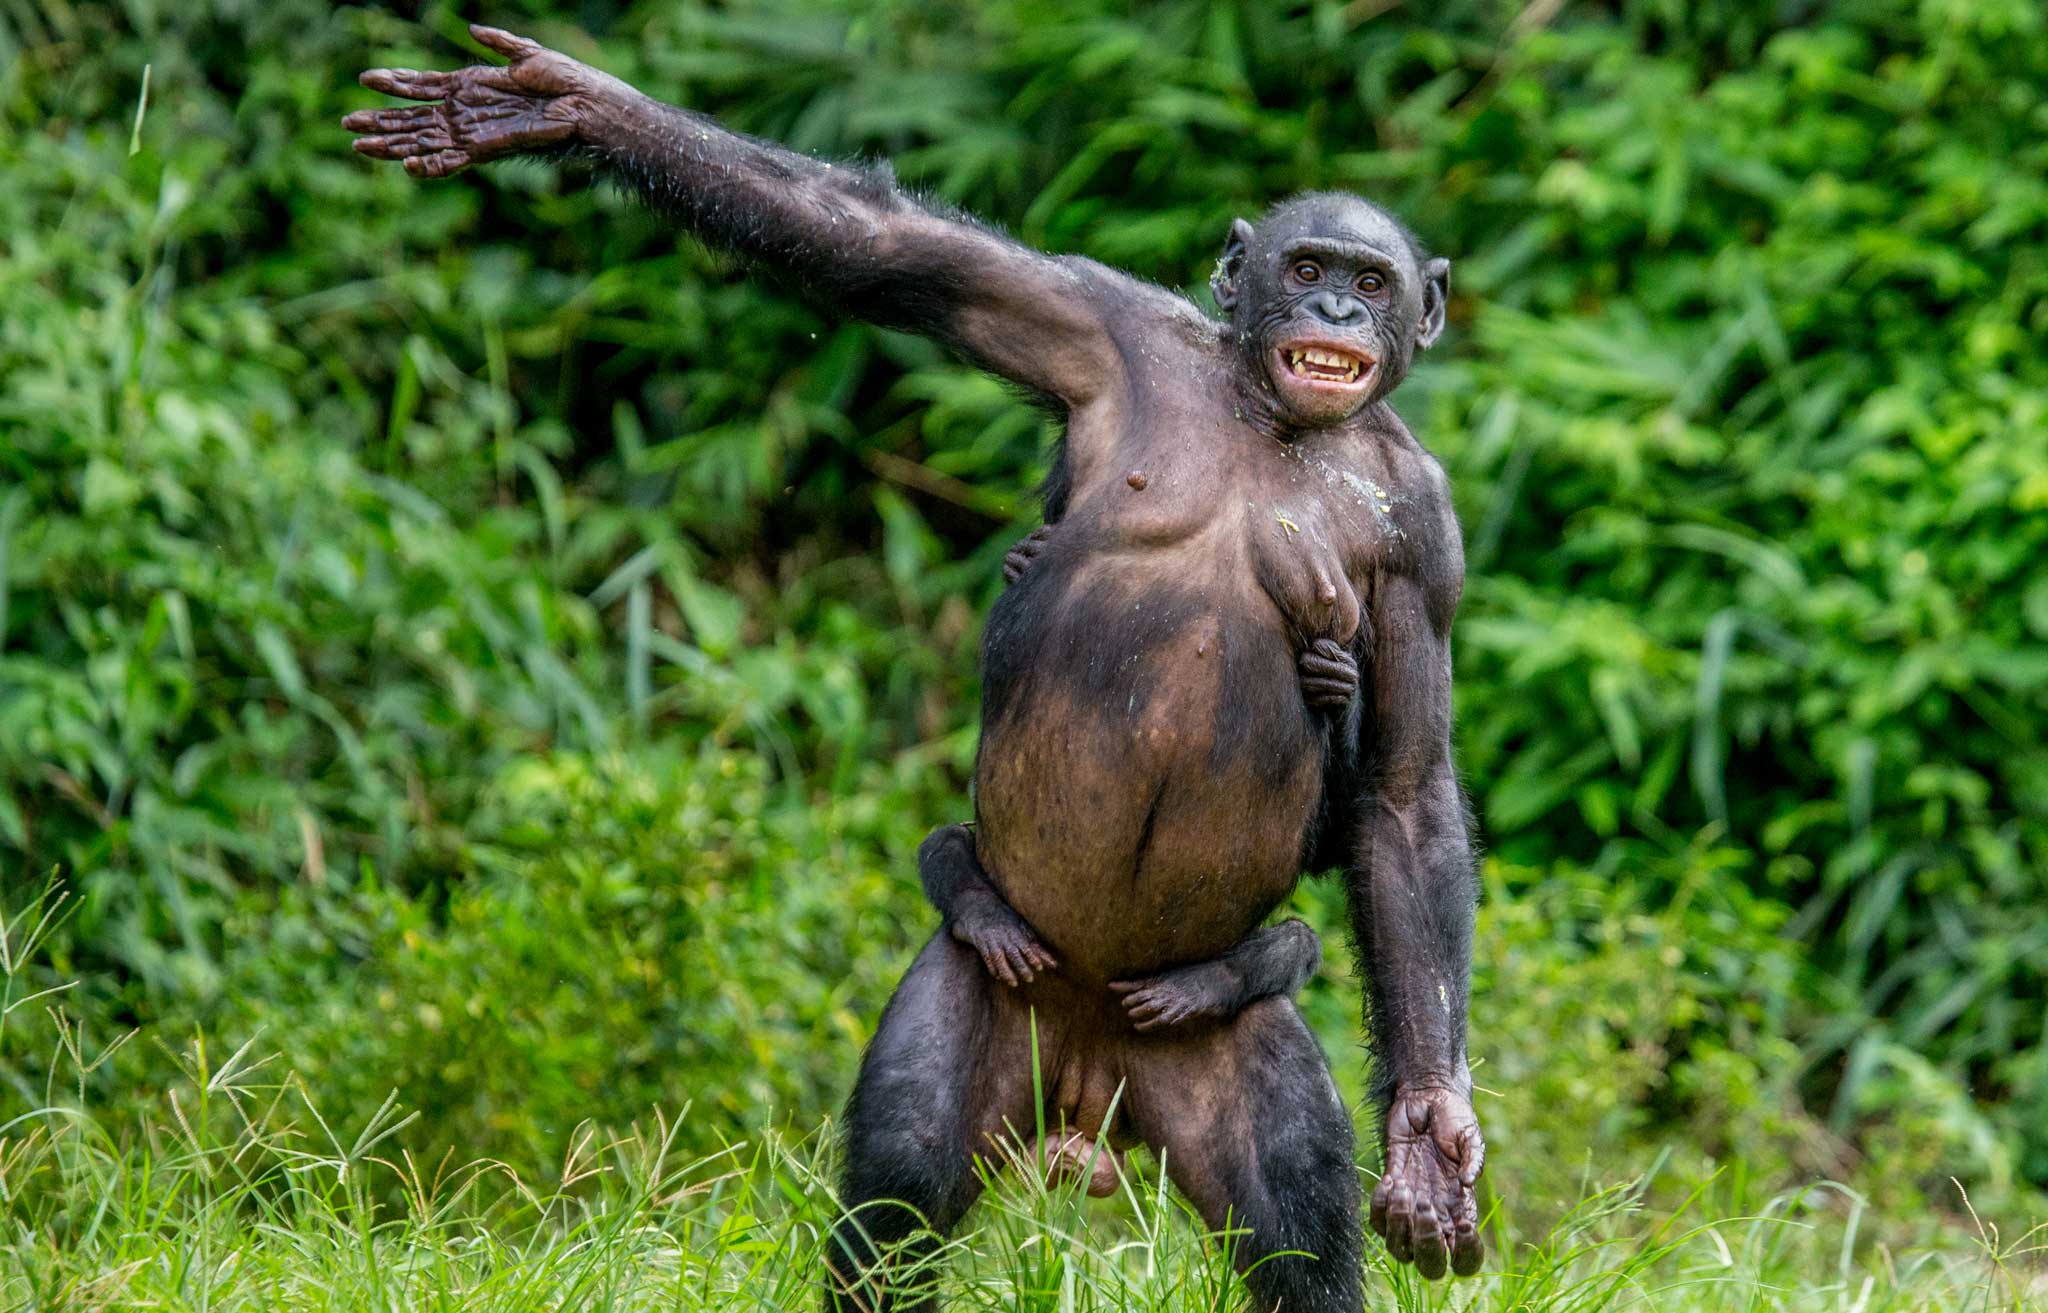 Waving Hello Signals Greeting Among Apes